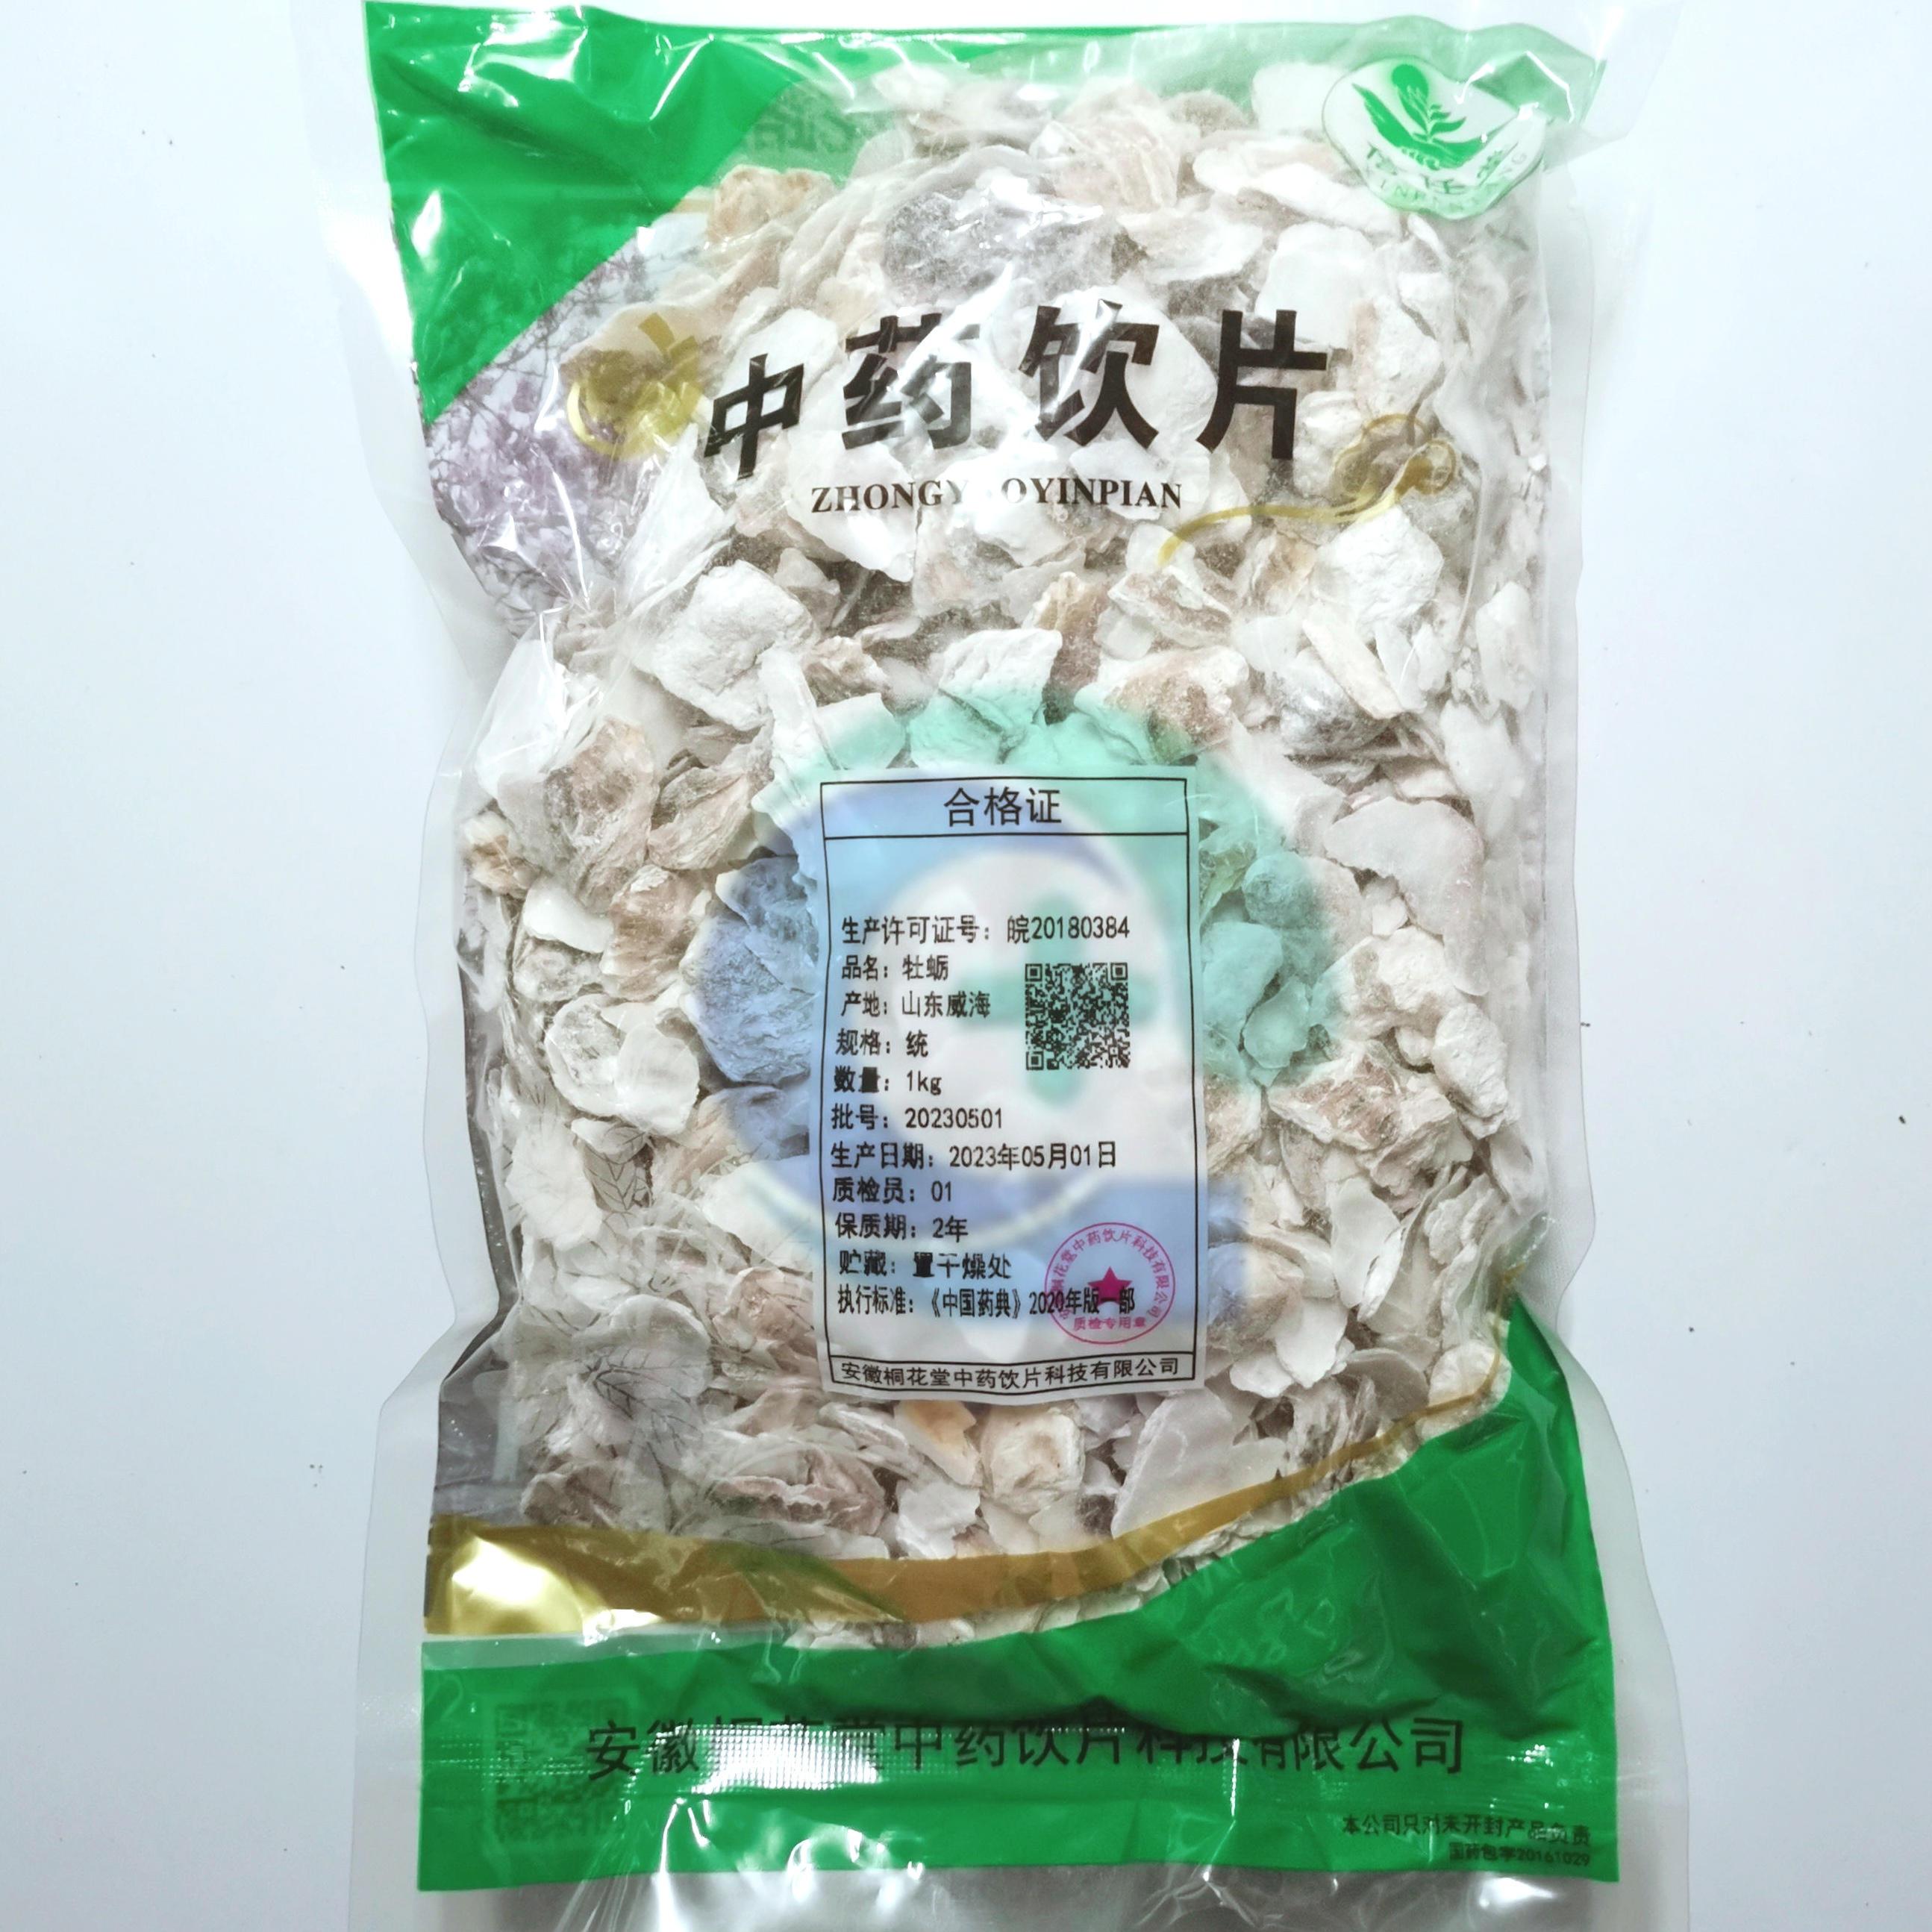 【】牡蛎-统-1kg/袋-安徽桐花堂中药饮片科技有限公司